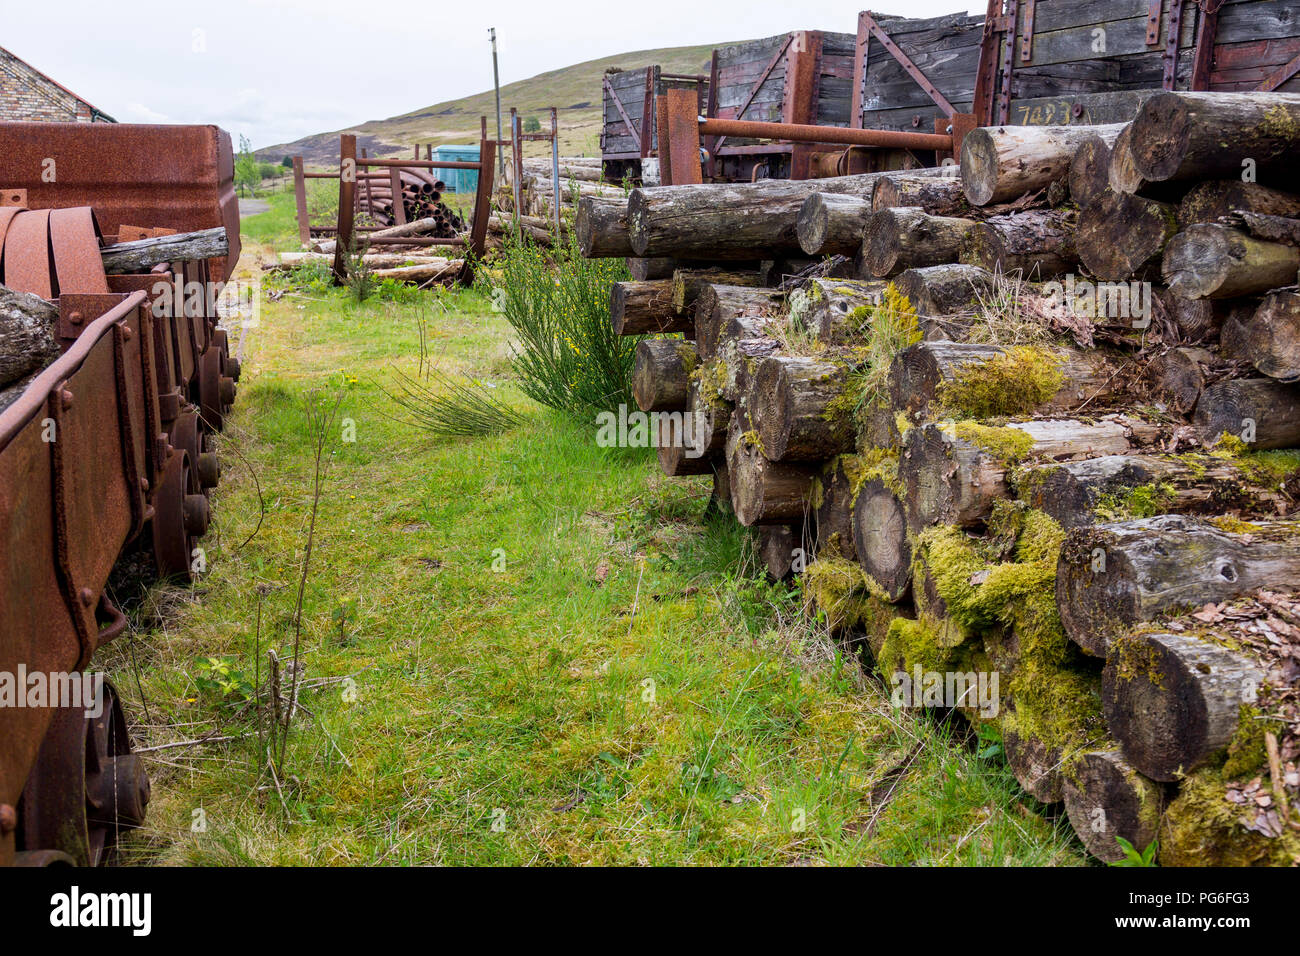 Verrottendes Holz- Eisenbahnwaggons und pit Requisiten einmal an große Grube verwendet - ein ehemaliges Bergwerk heute ein UNESCO-Welterbe in Blaenavon, Gwent, Wales, Großbritannien Stockfoto